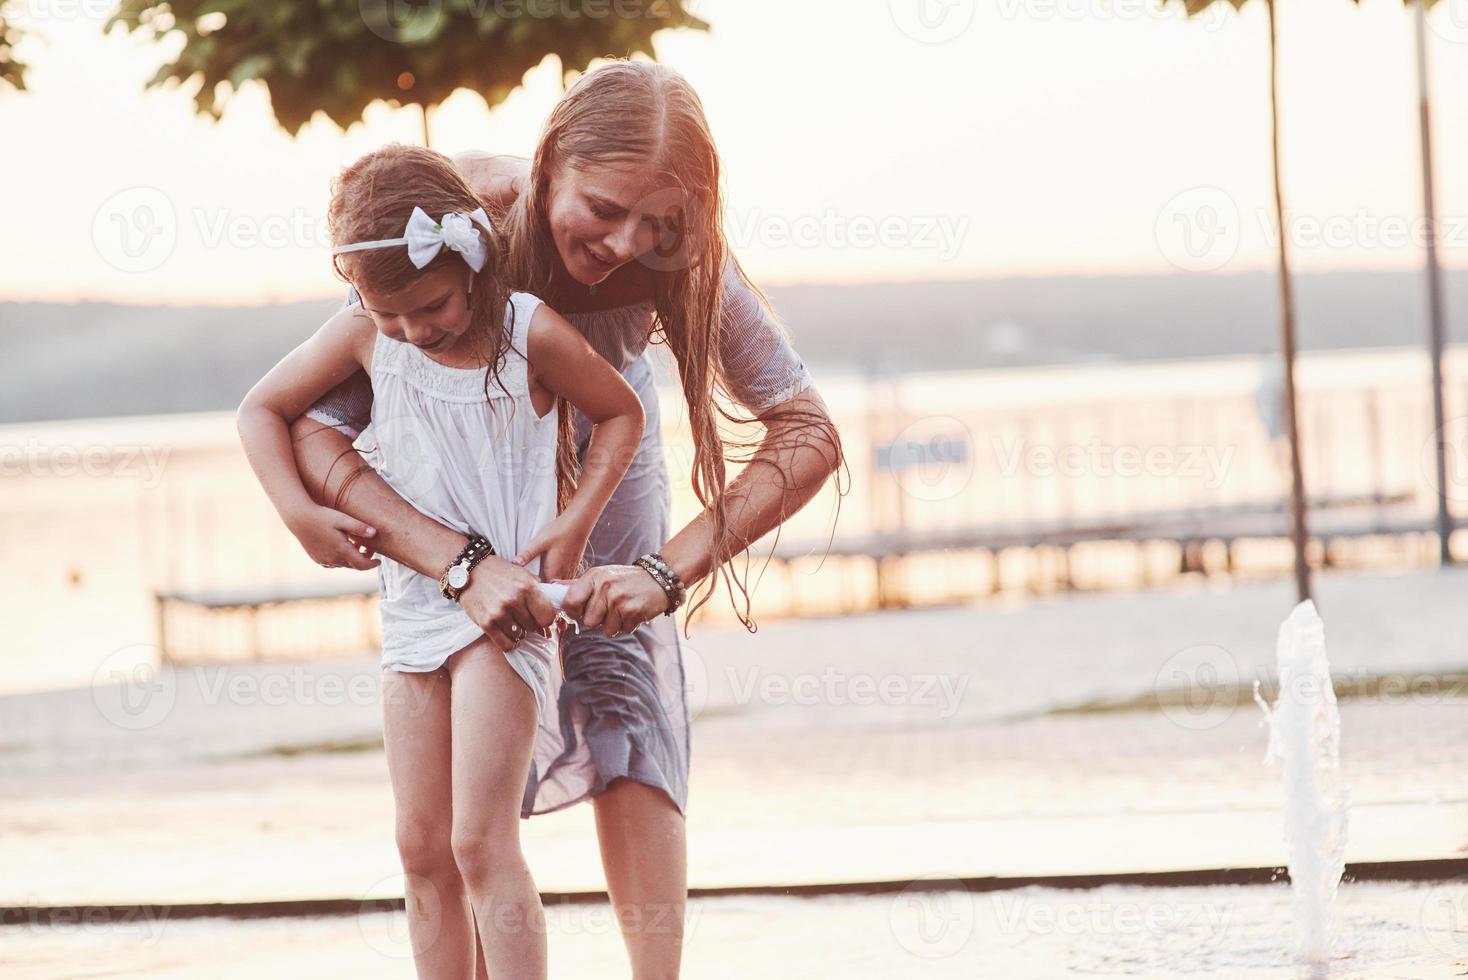 apretando un vestido. en un día caluroso y soleado, la madre y su hija deciden usar la fuente para refrescarse y divertirse con ella foto